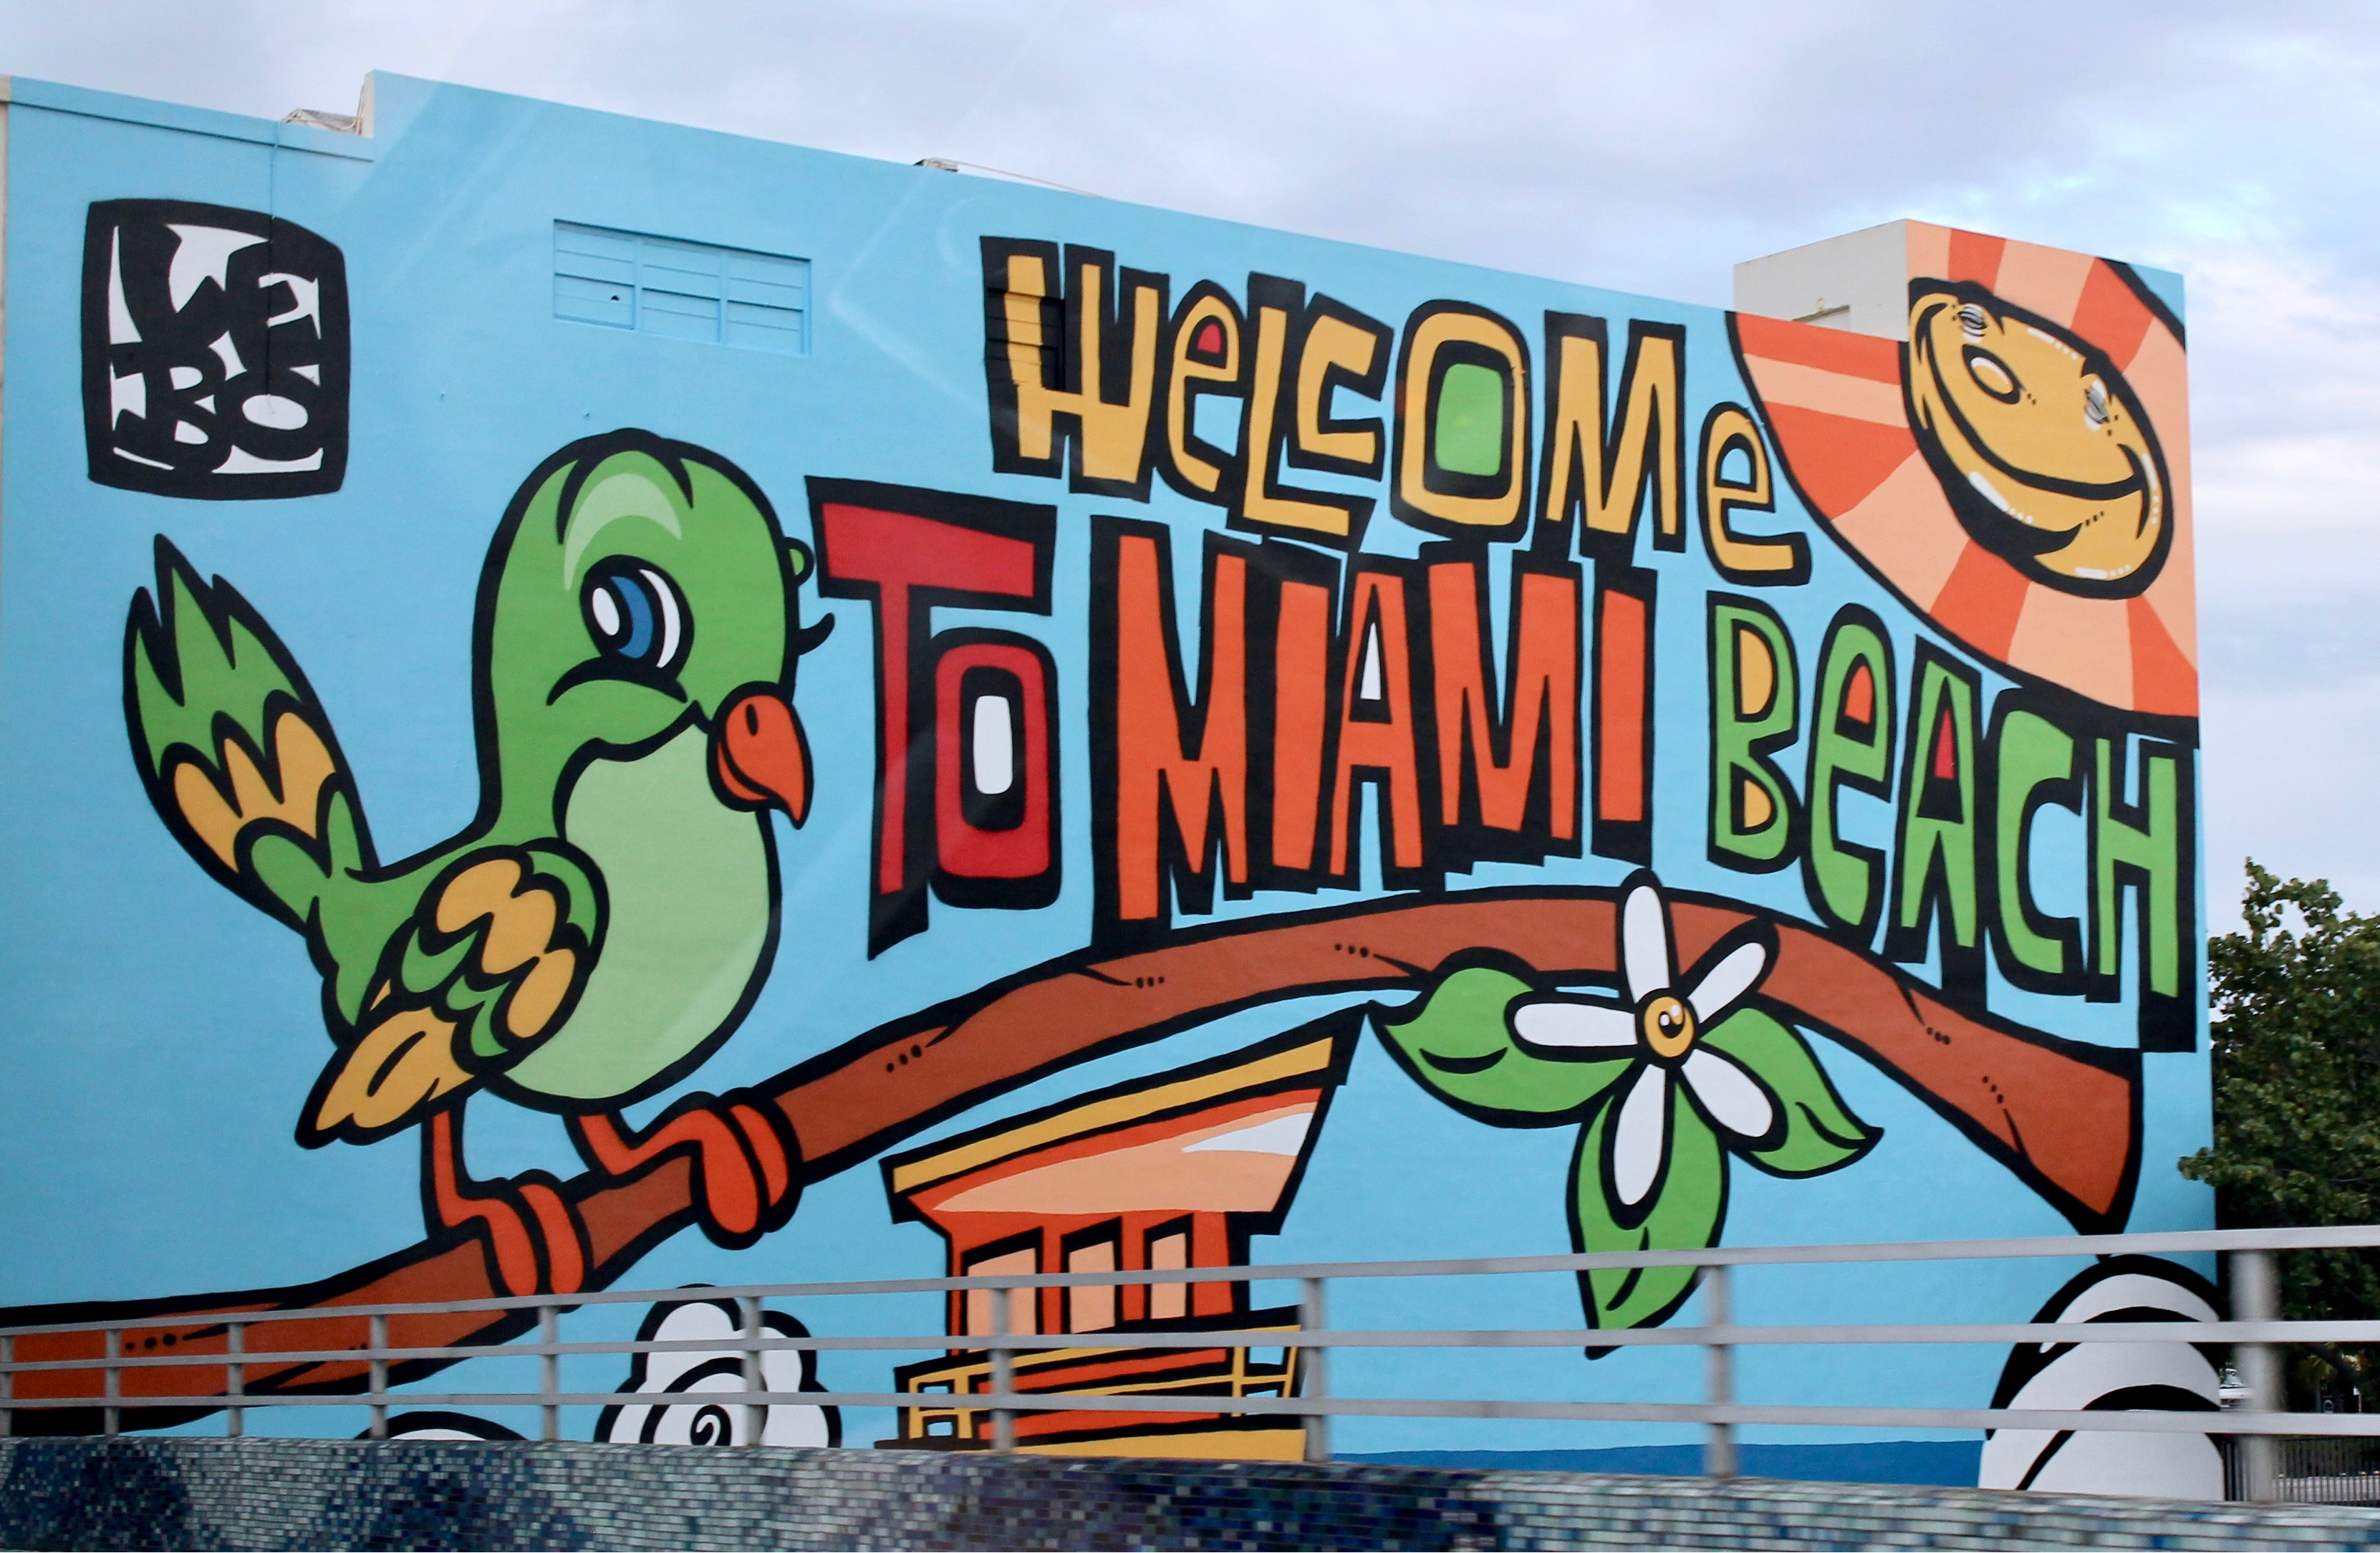 Bunte Wand mit Graffiti "Welcome to Miami Beach" in Miami